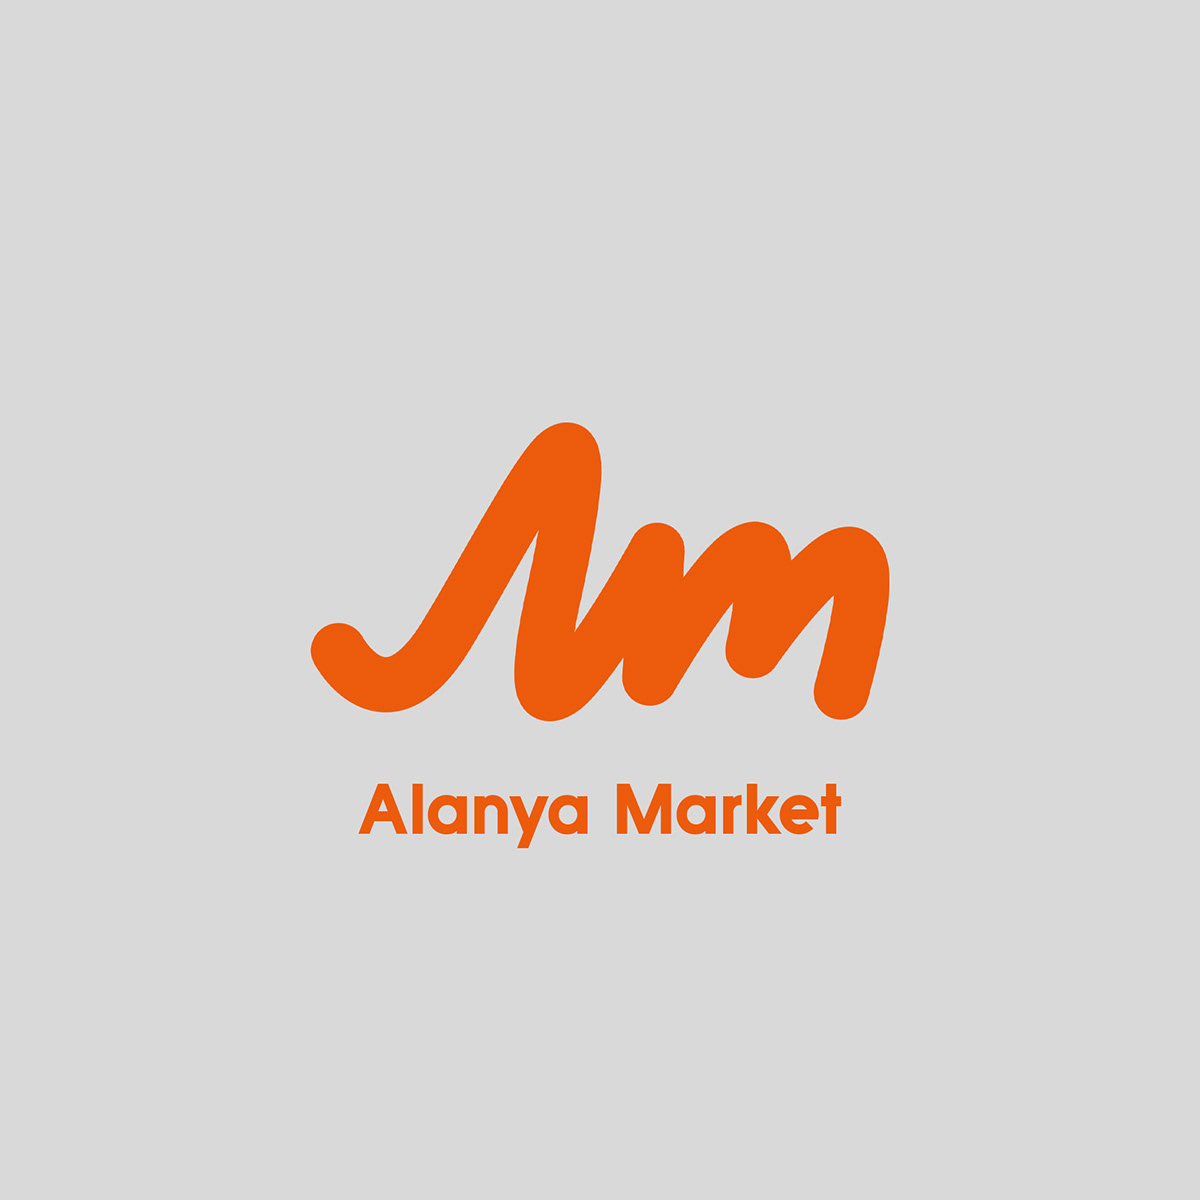 Alanya Market